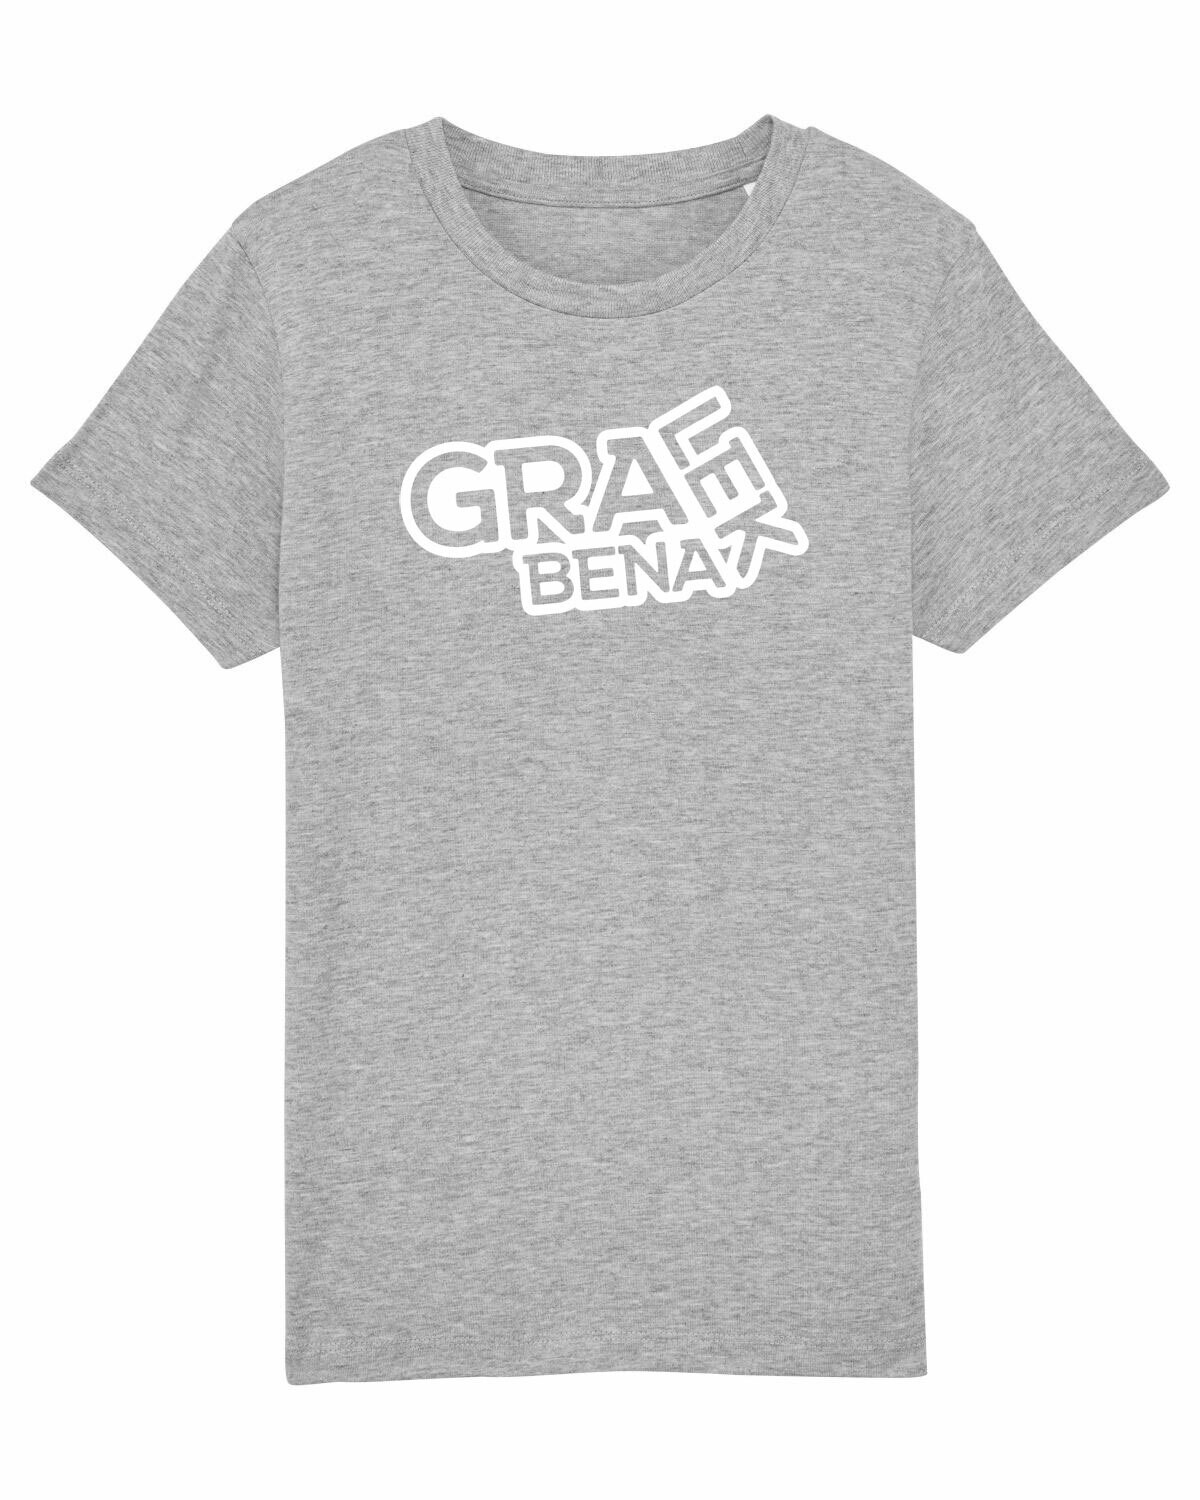 Kids T-shirt Gralek Benalek